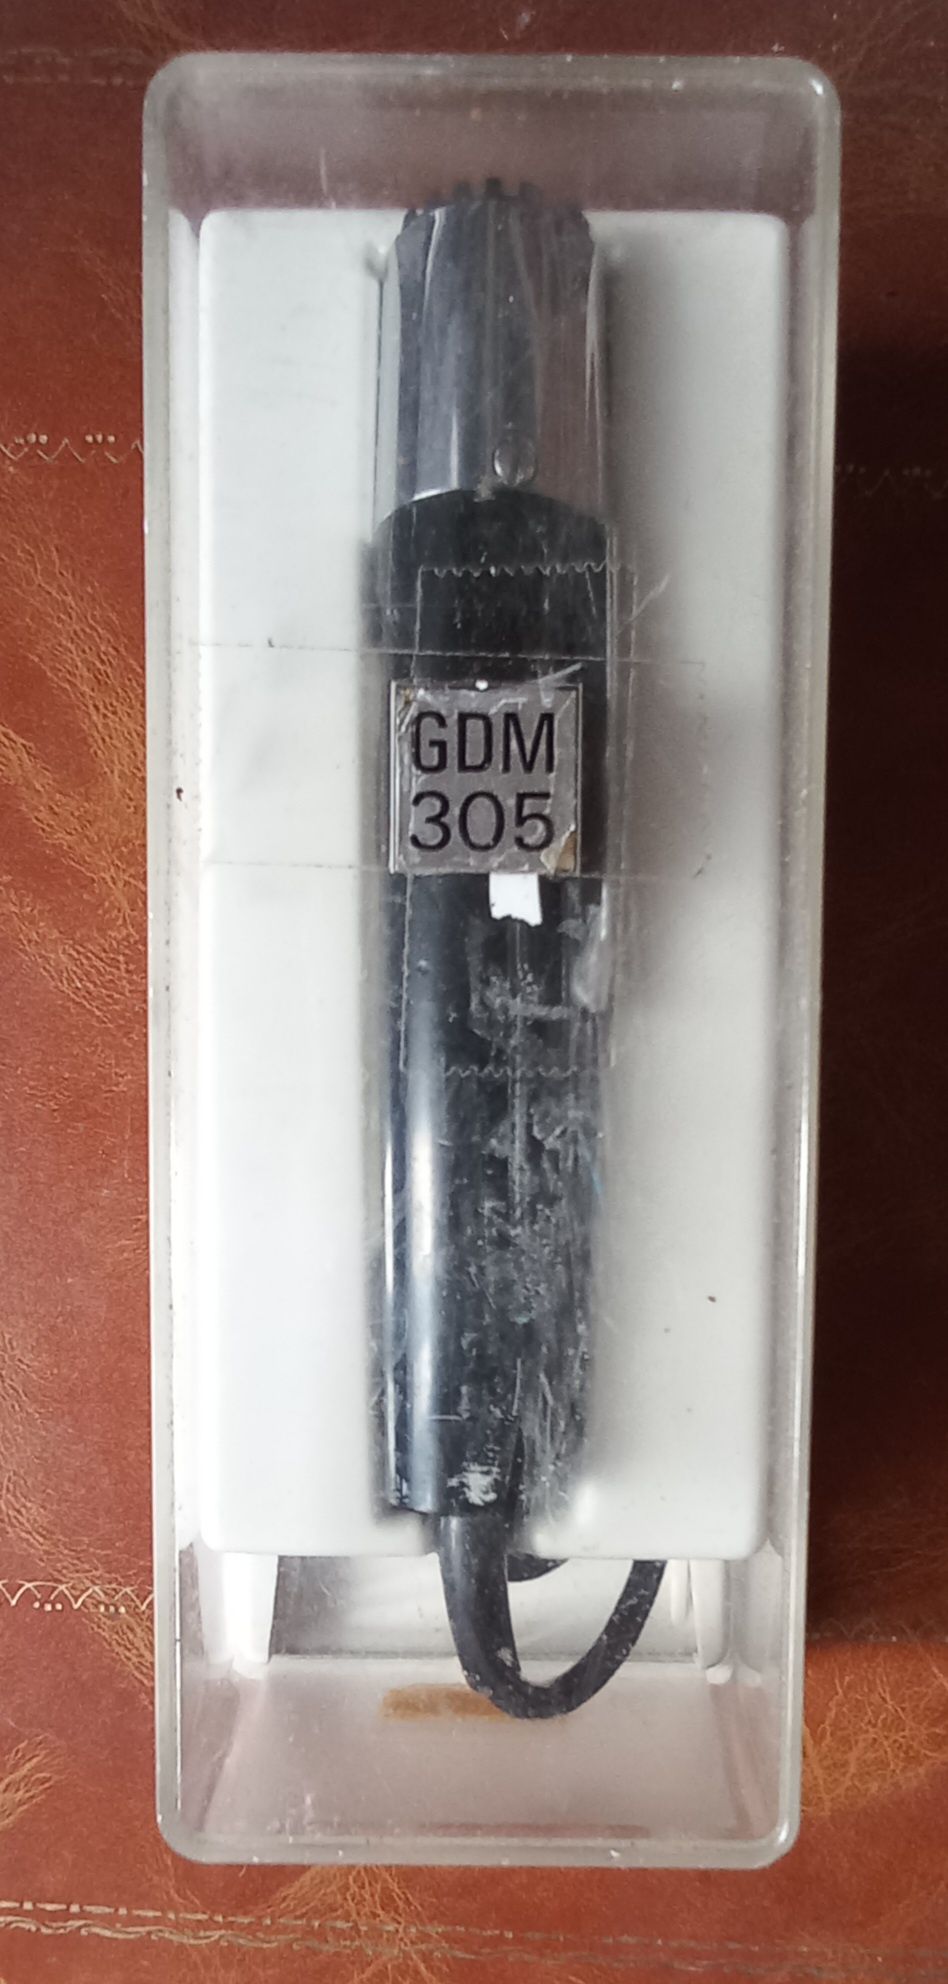 Microfone Grundig modelo GDM 305, caixa original.